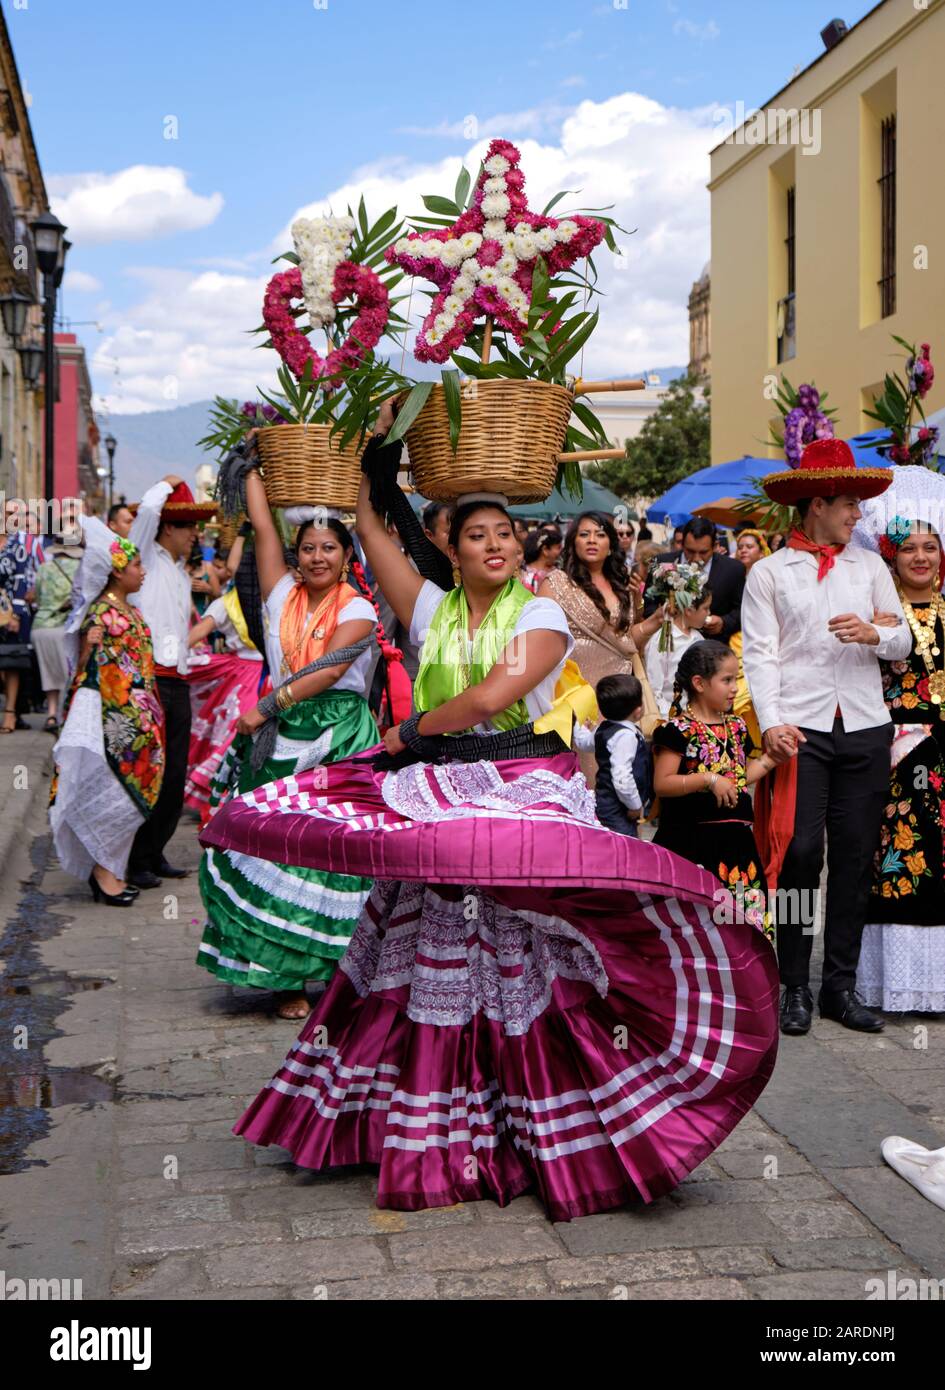 Donna che balla in un abito tradizionale scorrevole con cesto di fiori parte della parata tradizionale (Calenda de Bodas) sulle strade di Oaxaca. Foto Stock